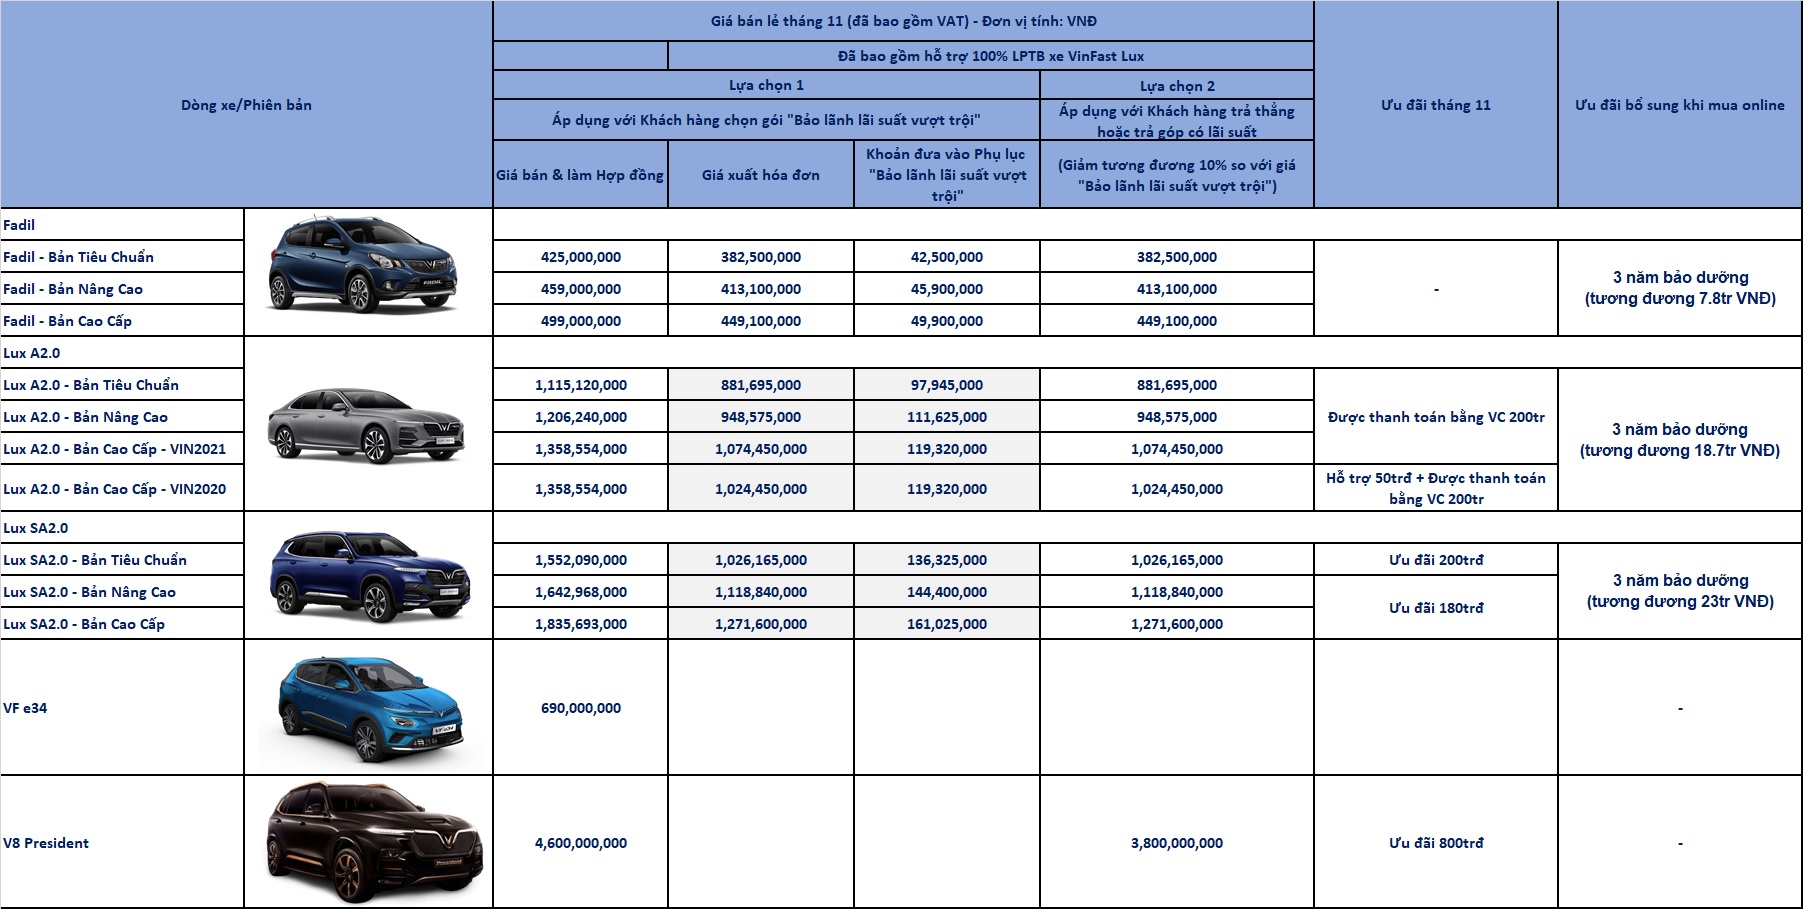 Giá xe các phiên bản xe VinFast Lux A2.0 và Lux SA2.0